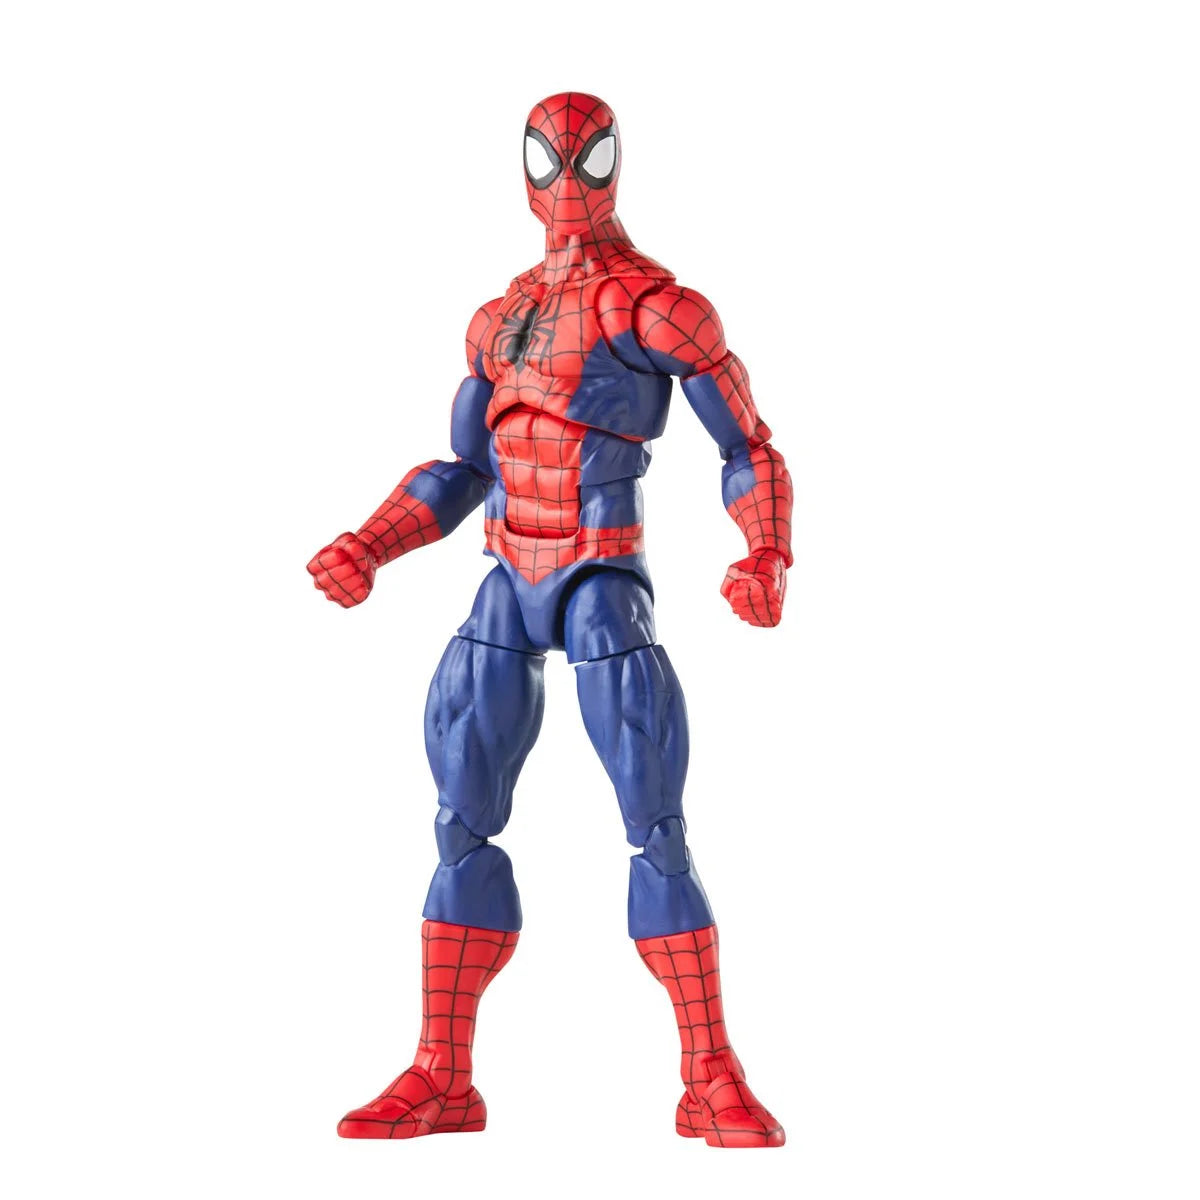 Marvel Legends Spider-Man and Spinneret Action Figure 2 Pack